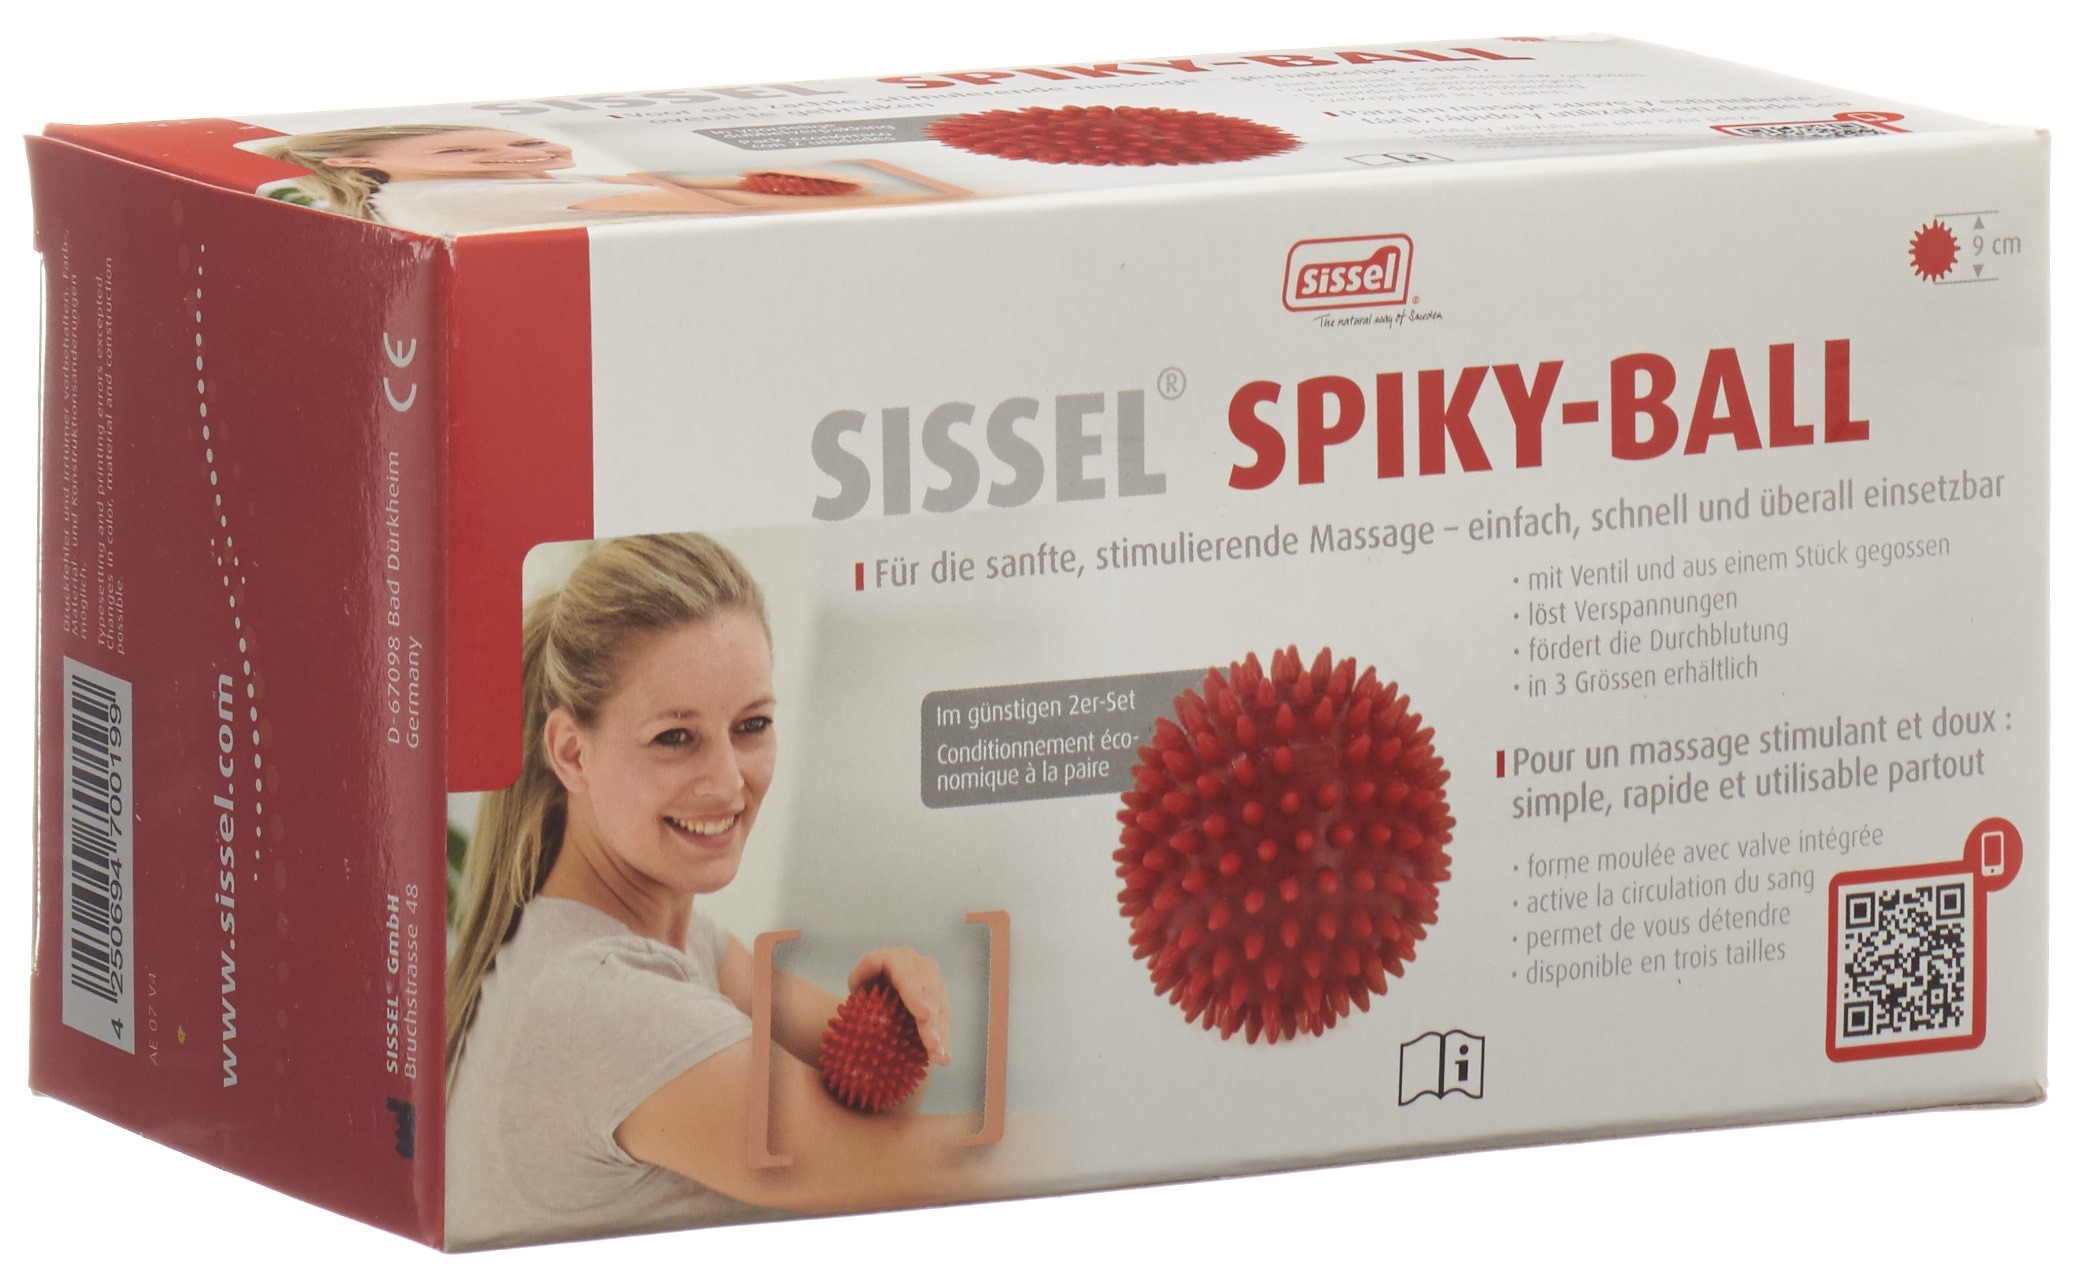 SISSEL Spiky-Ball 9cm rot 2 Stk